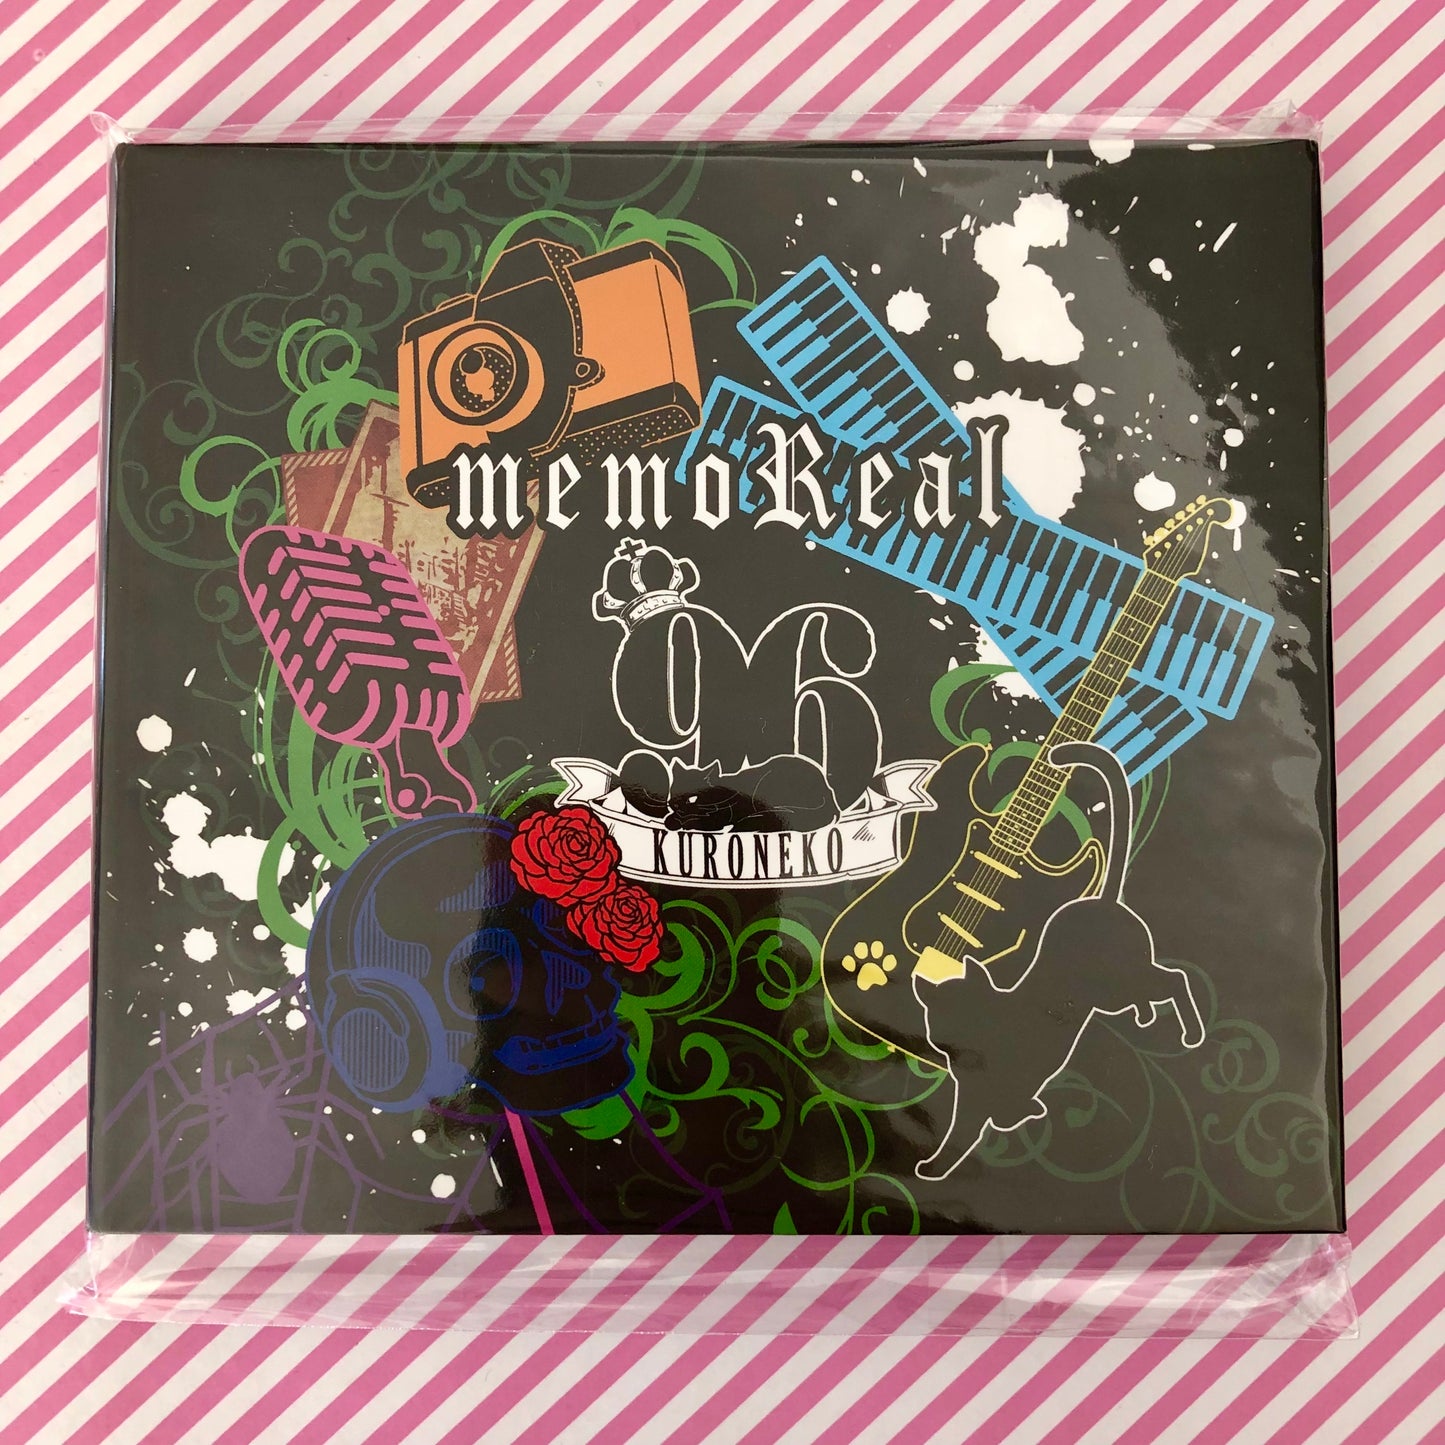 MemoReal - Kuroneko 96Neko Album CD